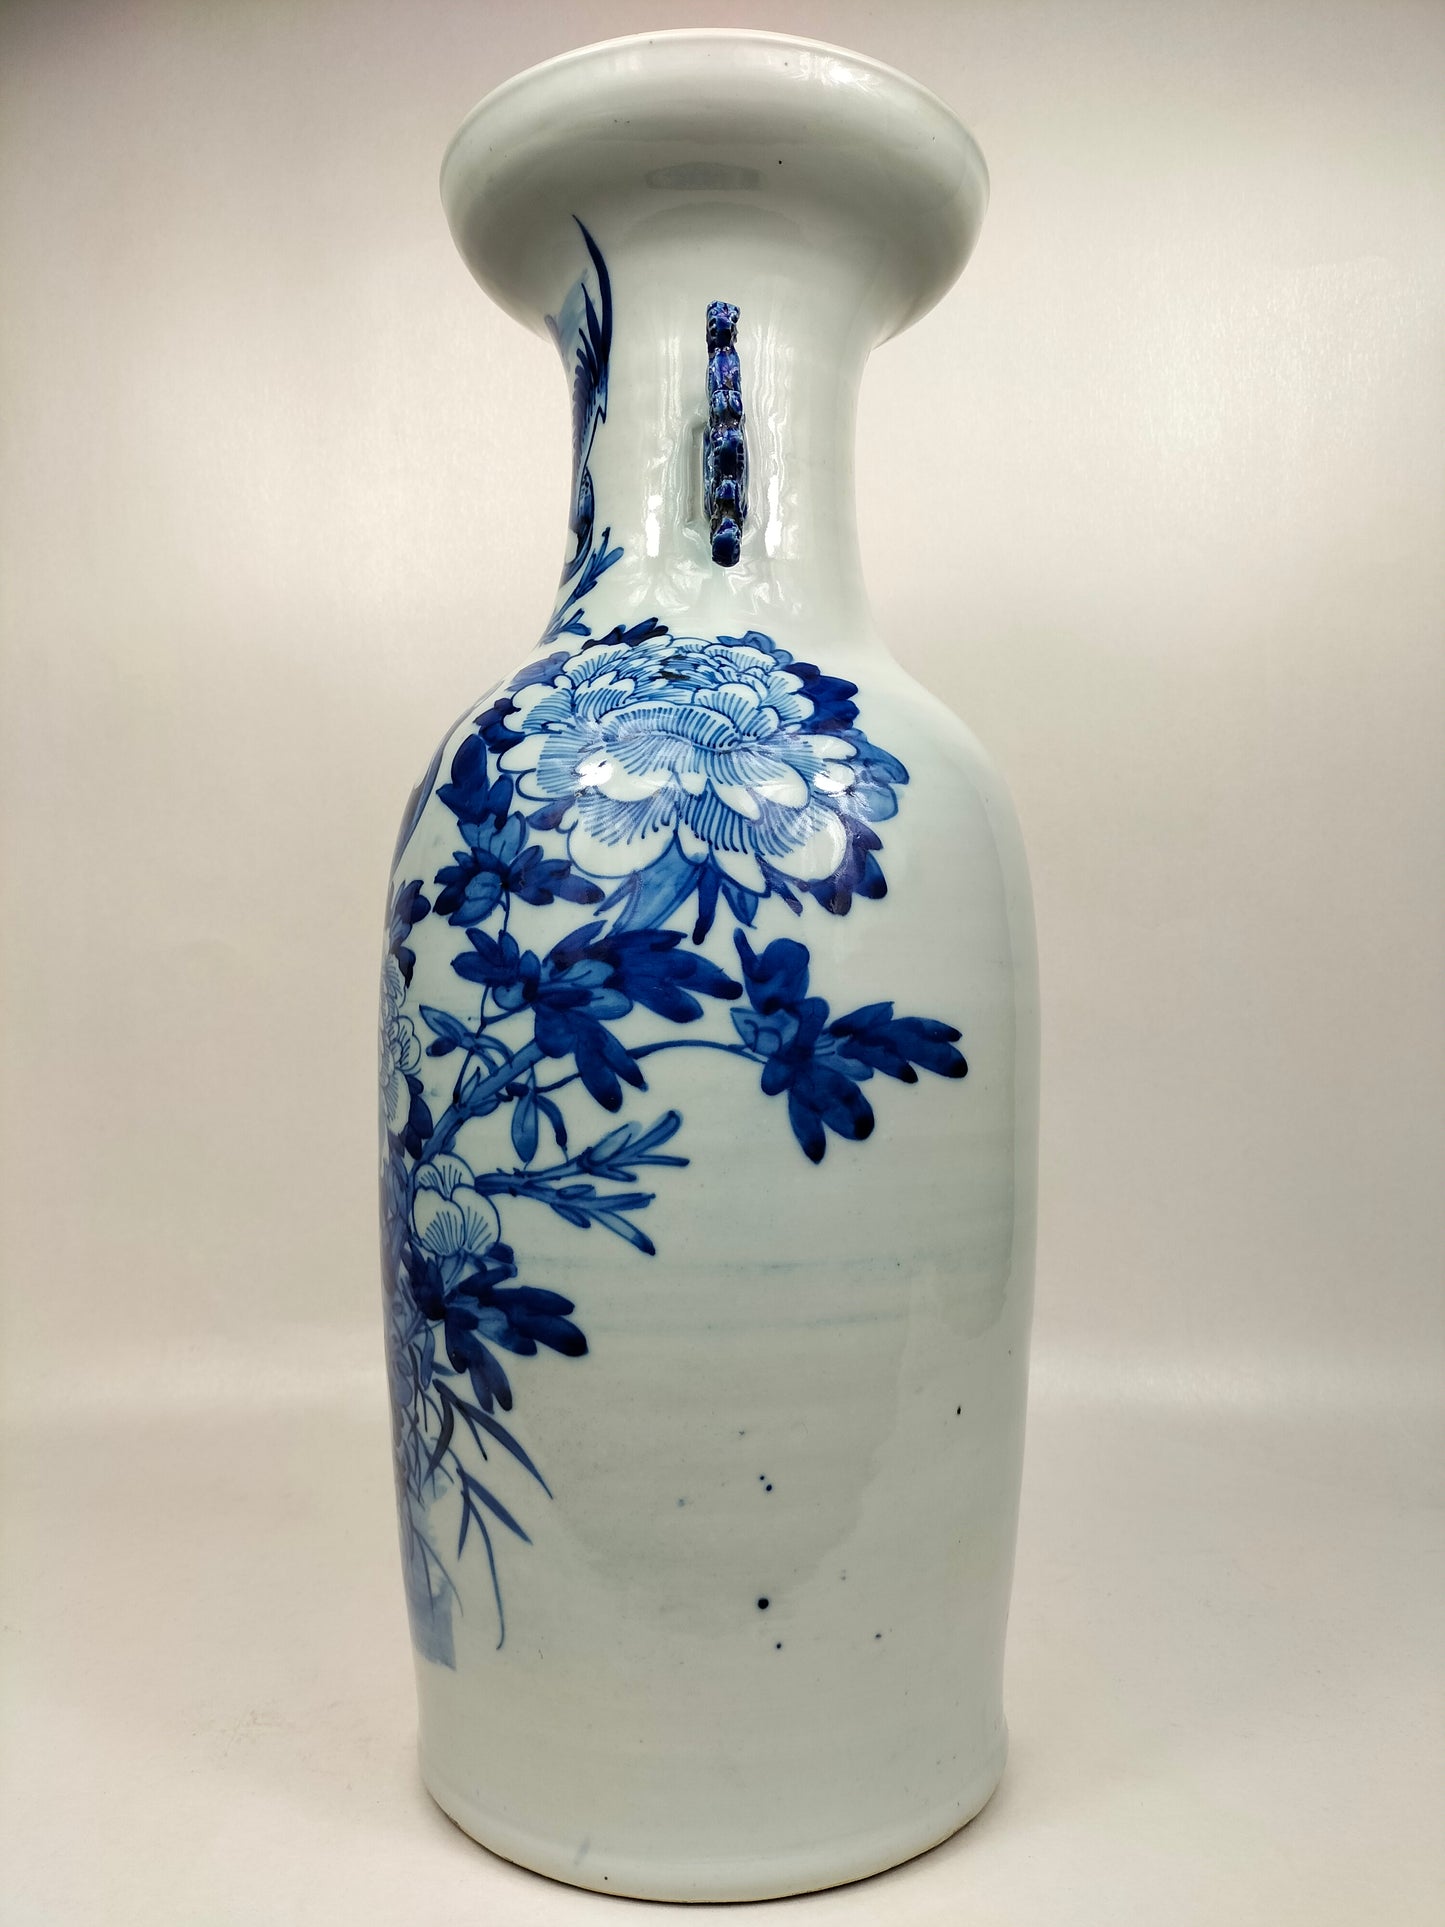 Grand vase chinois antique avec grues et fleurs // Bleu et blanc - Dynastie Qing - 19ème siècle